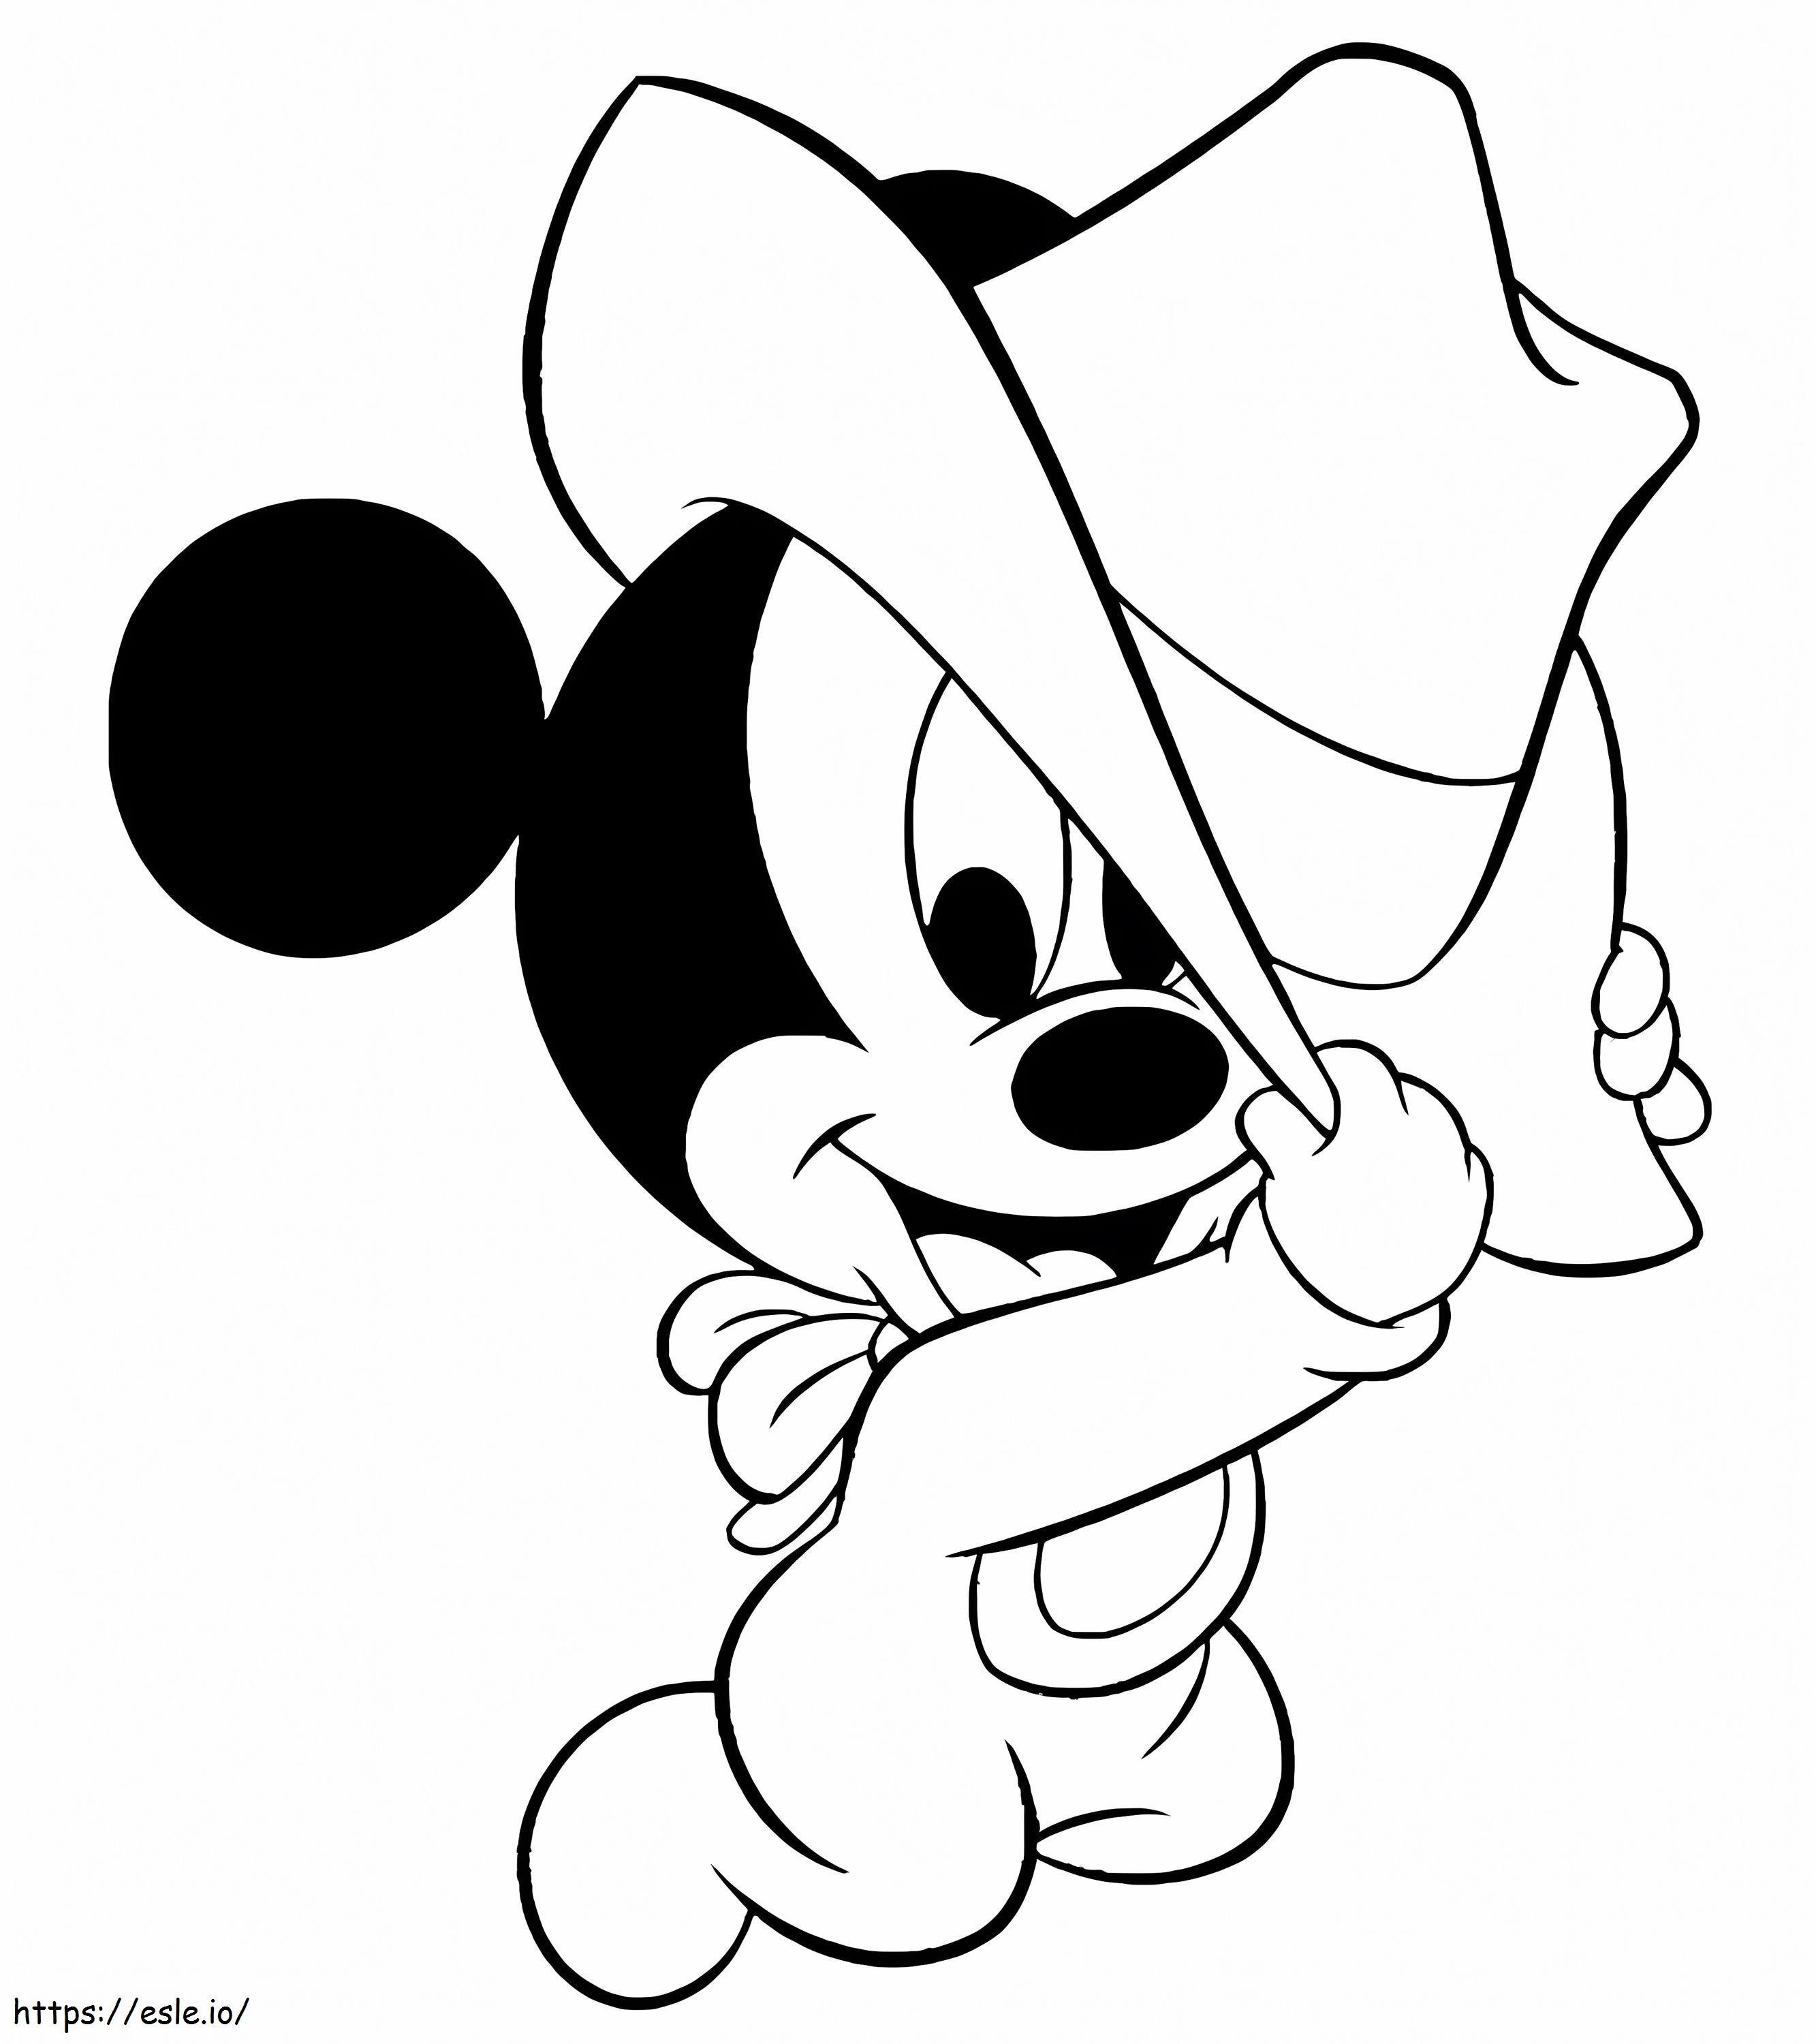 Baby Mickey Mouse met cowboyhoed kleurplaat kleurplaat